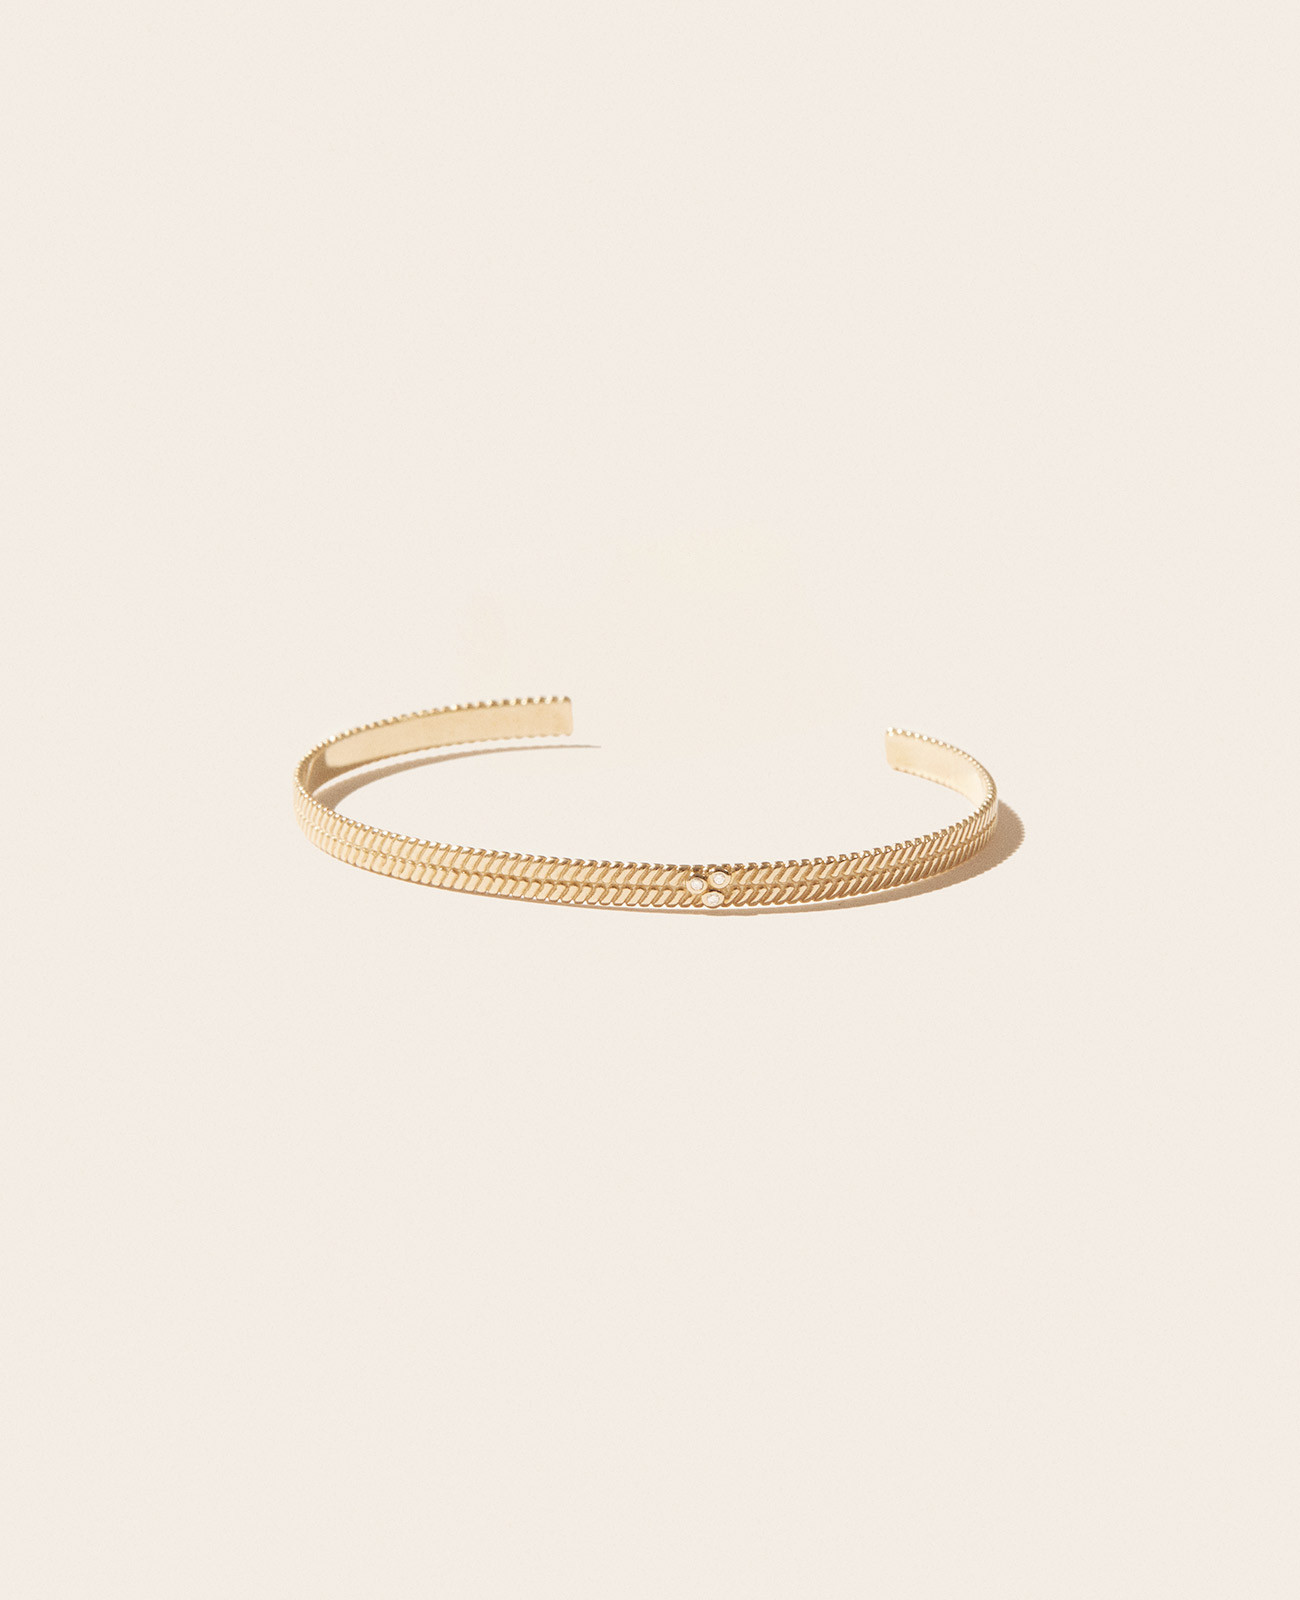 JIL N°1 bracelet pascale monvoisin jewelry paris